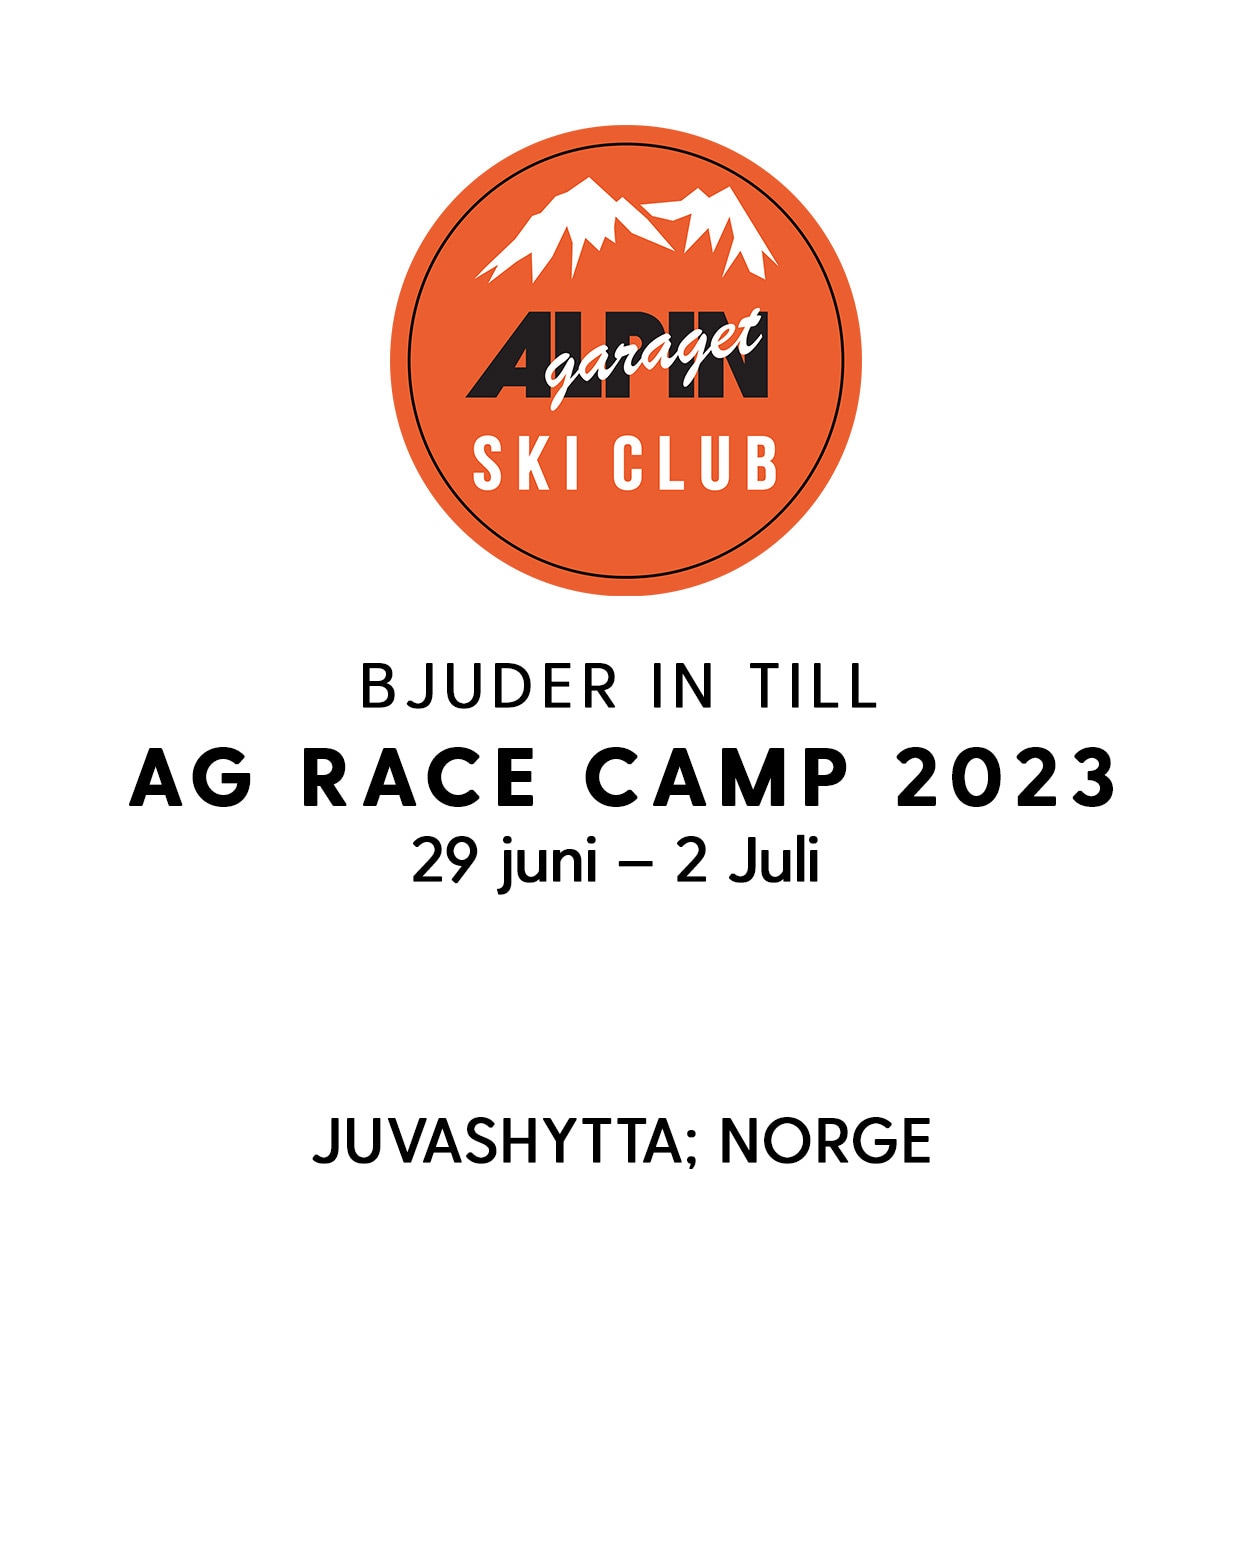 AG RACE CAMP 2023